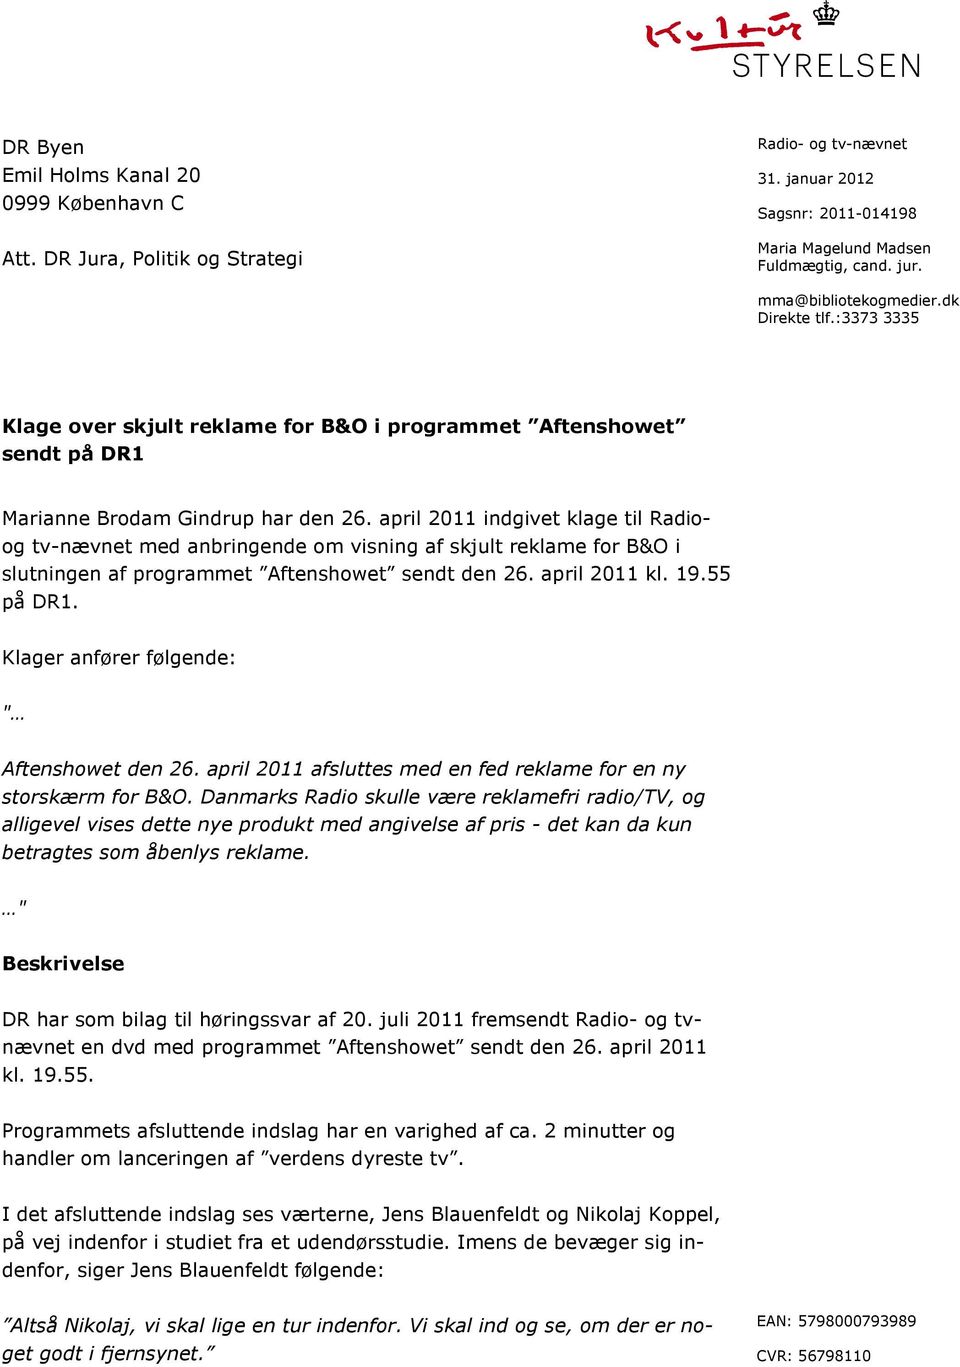 april 2011 indgivet klage til Radioog tv-nævnet med anbringende om visning af skjult reklame for B&O i slutningen af programmet Aftenshowet sendt den 26. april 2011 kl. 19.55 på DR1.